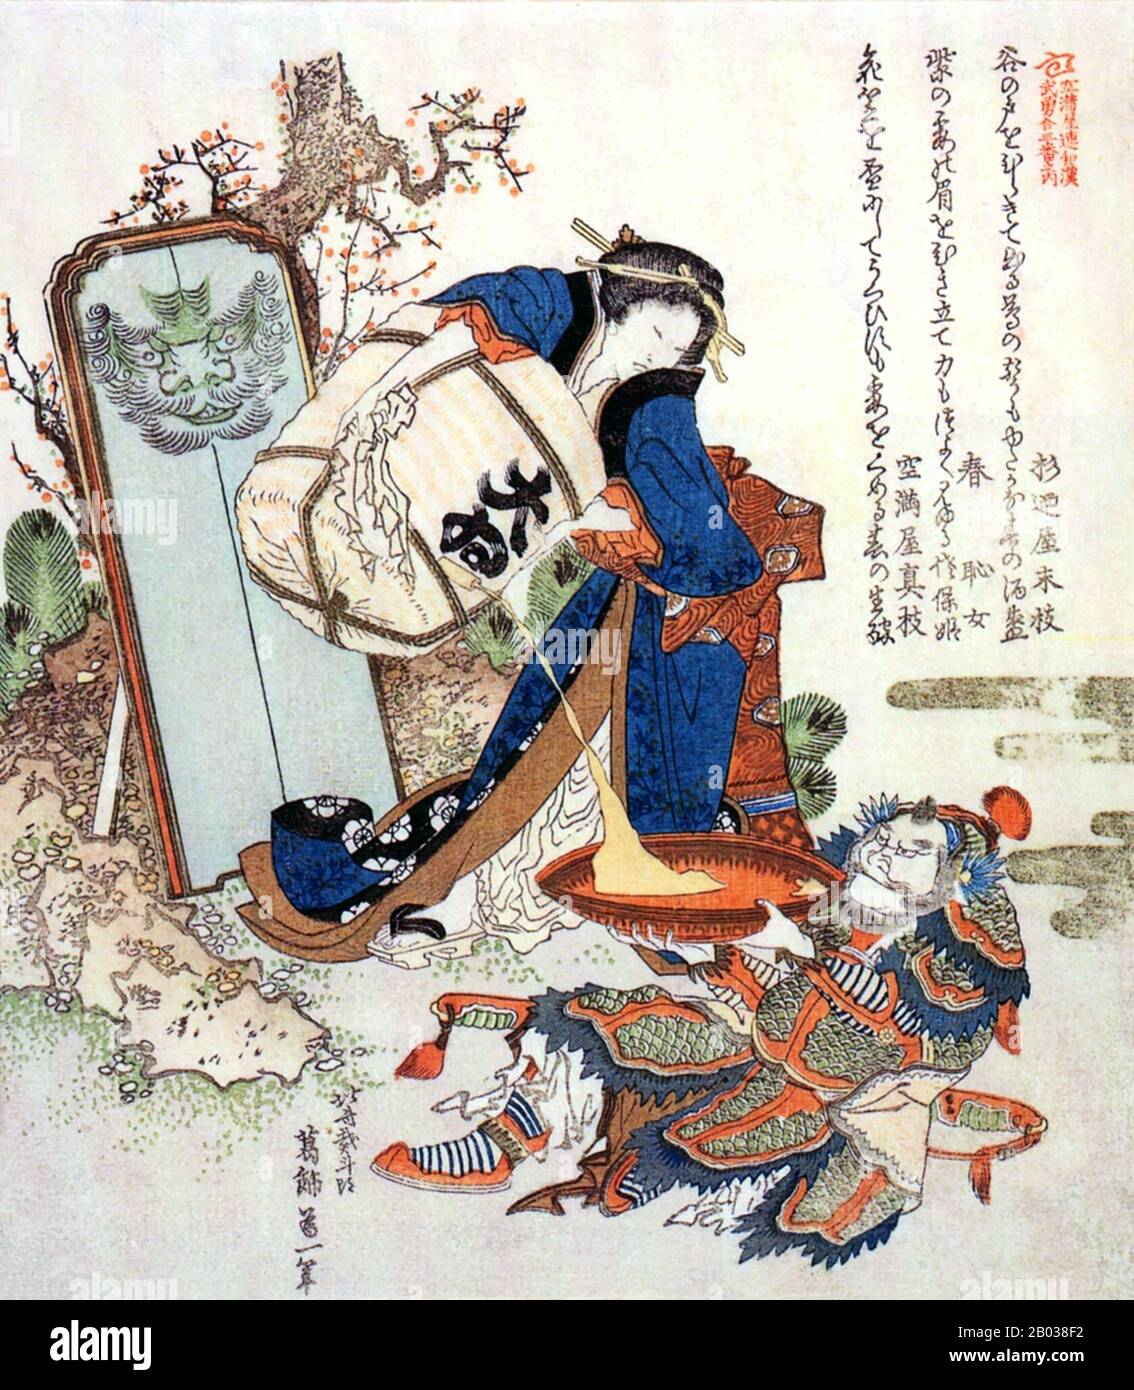 Katsushika Hokusai (1760-1849) était un célèbre peintre arist et ukyo-e de la fin De La Période Edo. Né à Edo, Hokusai était d'une famille artisanale et portait le nom d'enfance de Tokitaro. Au fur et à mesure qu'il a grandi et qu'il est devenu artiste, il utiliserait plus de trente noms tout au long de sa vie, dépassant celui de tout autre grand artiste japonais. Son travail le plus connu a été la série "trente-six Vues sur le Mont Fuji", qui a obtenu sa renommée non seulement au Japon mais aussi à l'étranger. Bien qu'il ait eu une longue carrière, son travail le plus important a sans doute été produit après qu'il a tourné 60 ans, quand son travail a transformé l'œuvre d'ukiyo Banque D'Images